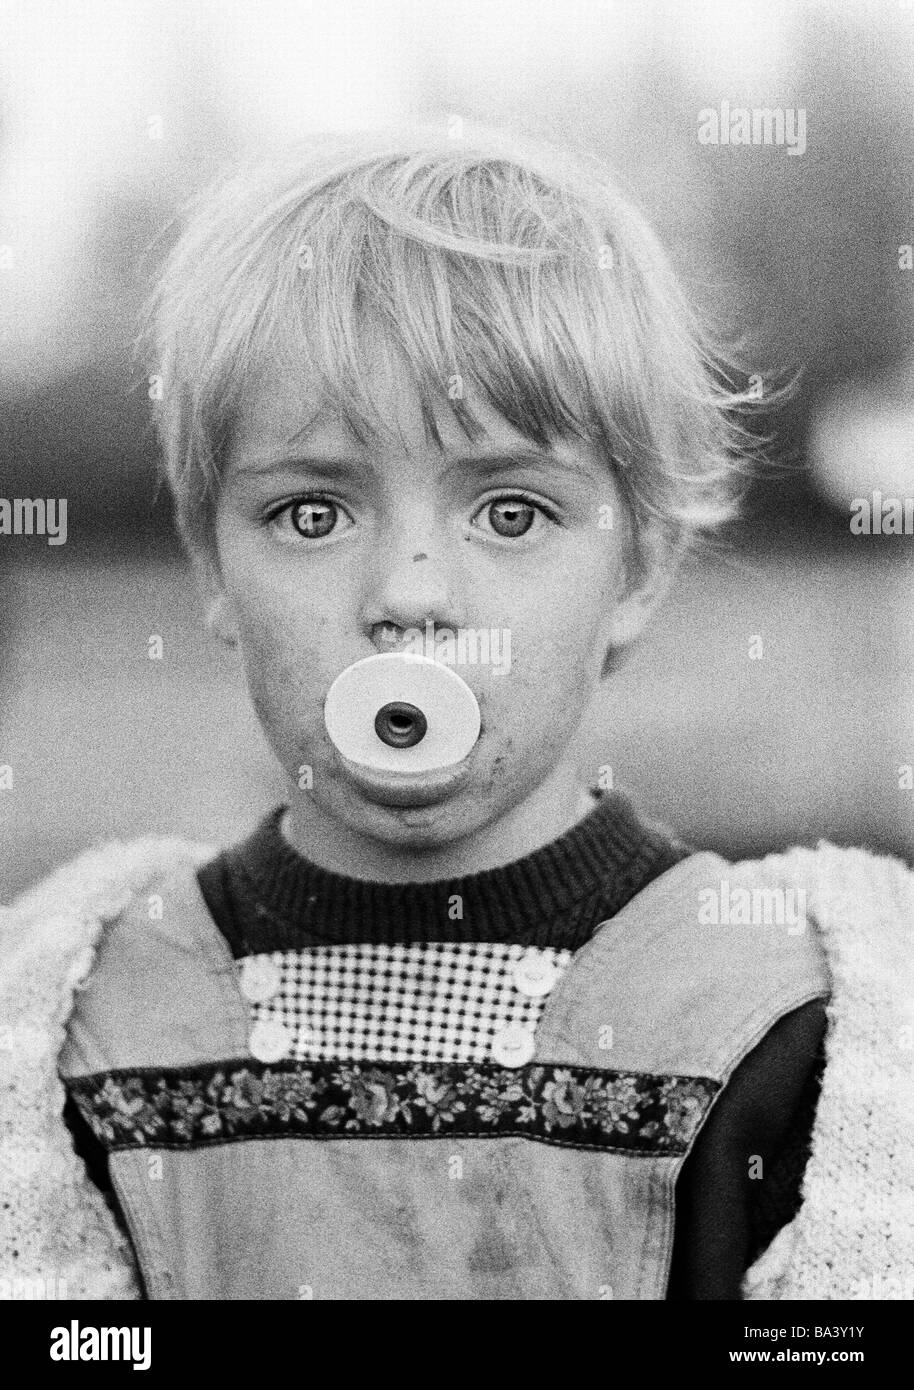 Negli anni settanta, foto in bianco e nero, persone, bambini, bambina, ritratto, bambino di strada, esecuzione di naso, sporco, mucky, baby-succhietto in tumulo di età compresa tra i 4 ed i 6 anni Foto Stock